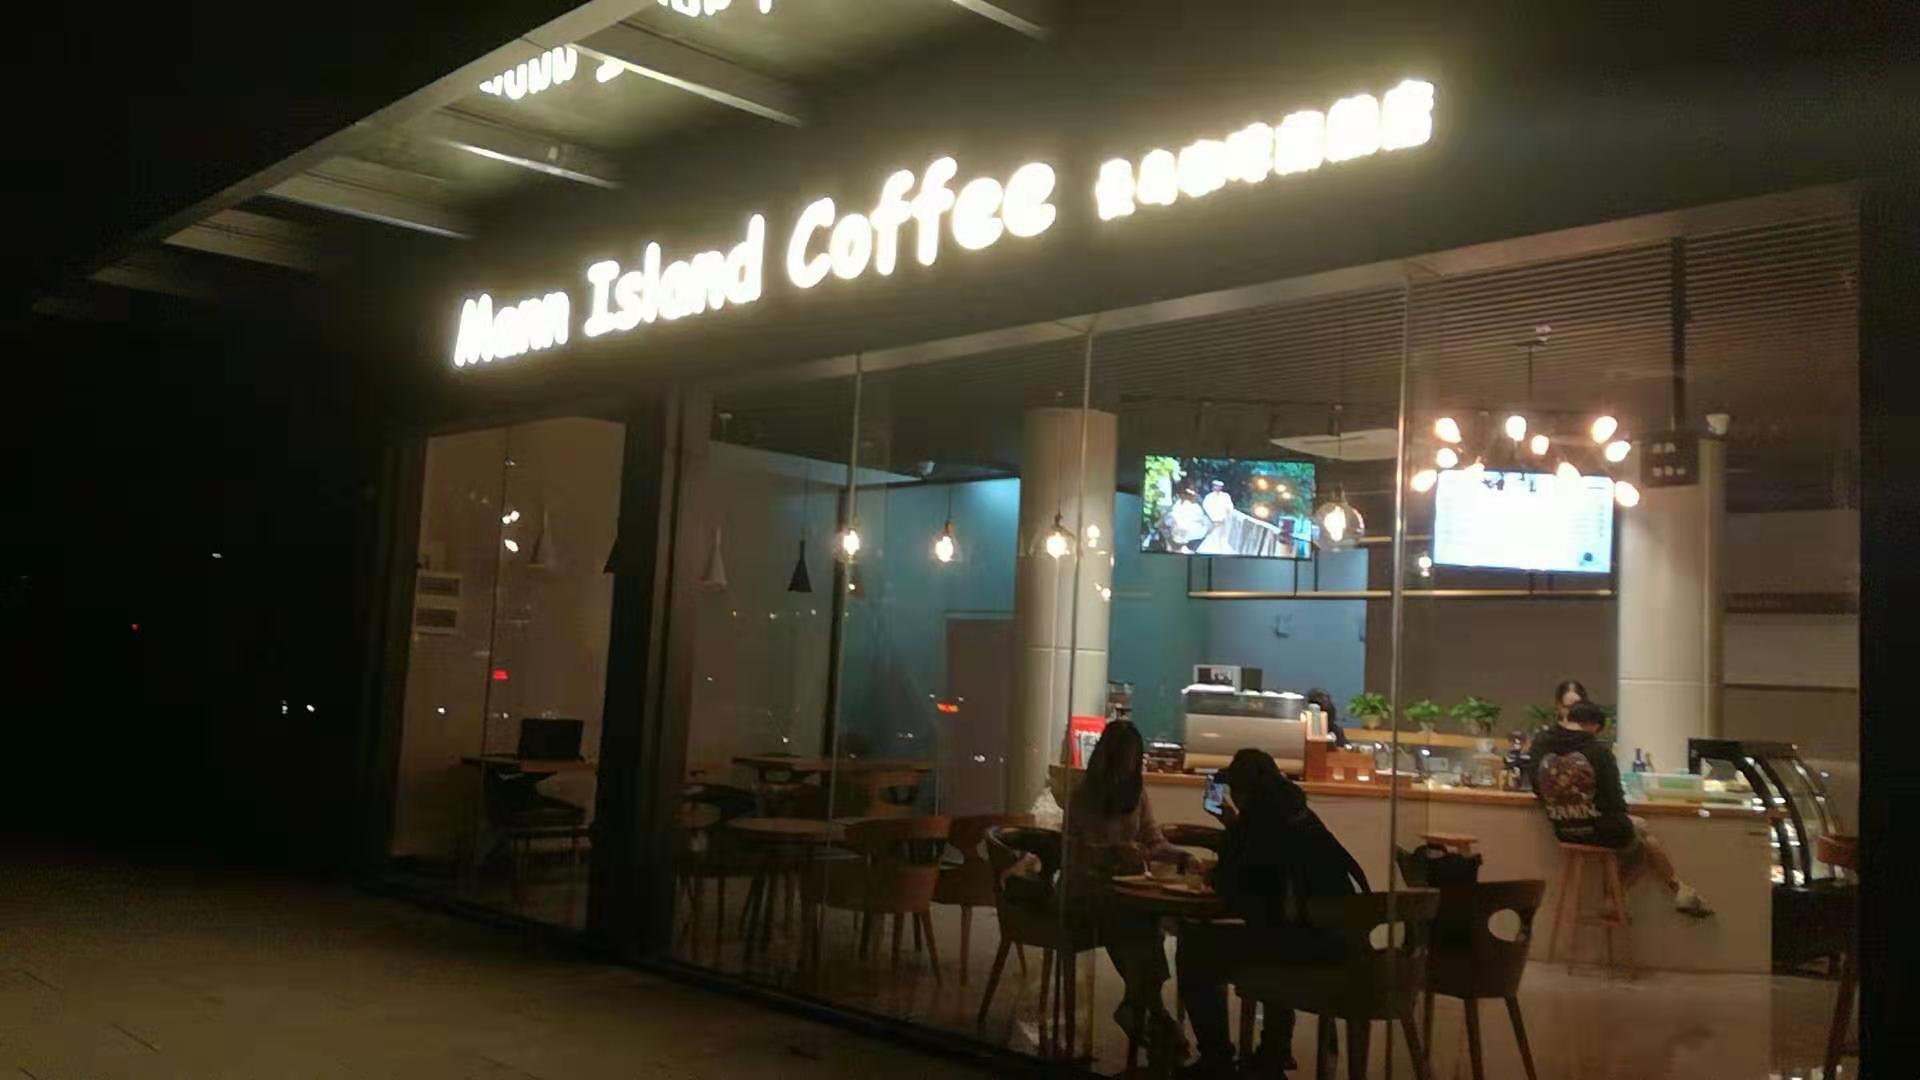 漫島咖啡店